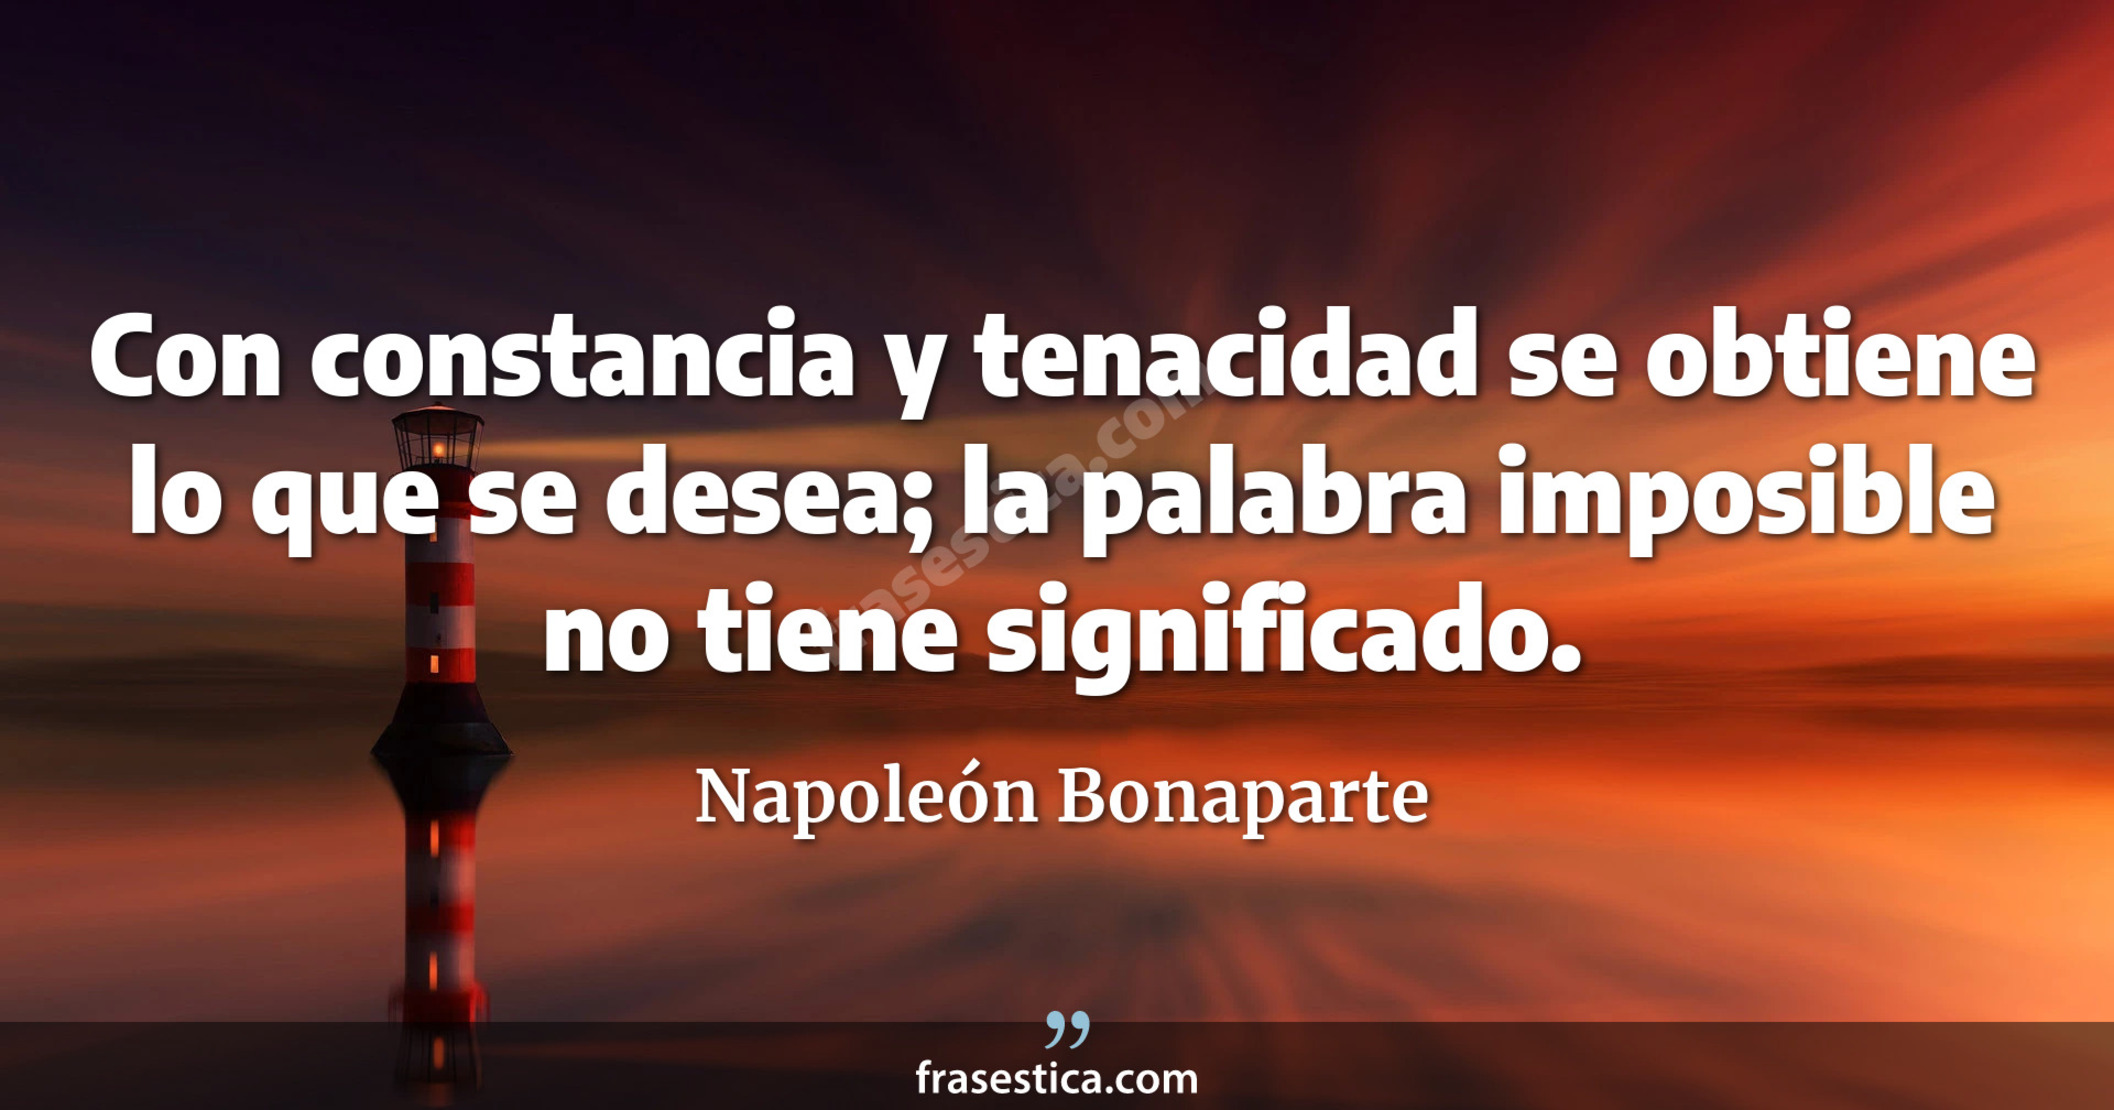 Con constancia y tenacidad se obtiene lo que se desea; la palabra imposible no tiene significado. - Napoleón Bonaparte